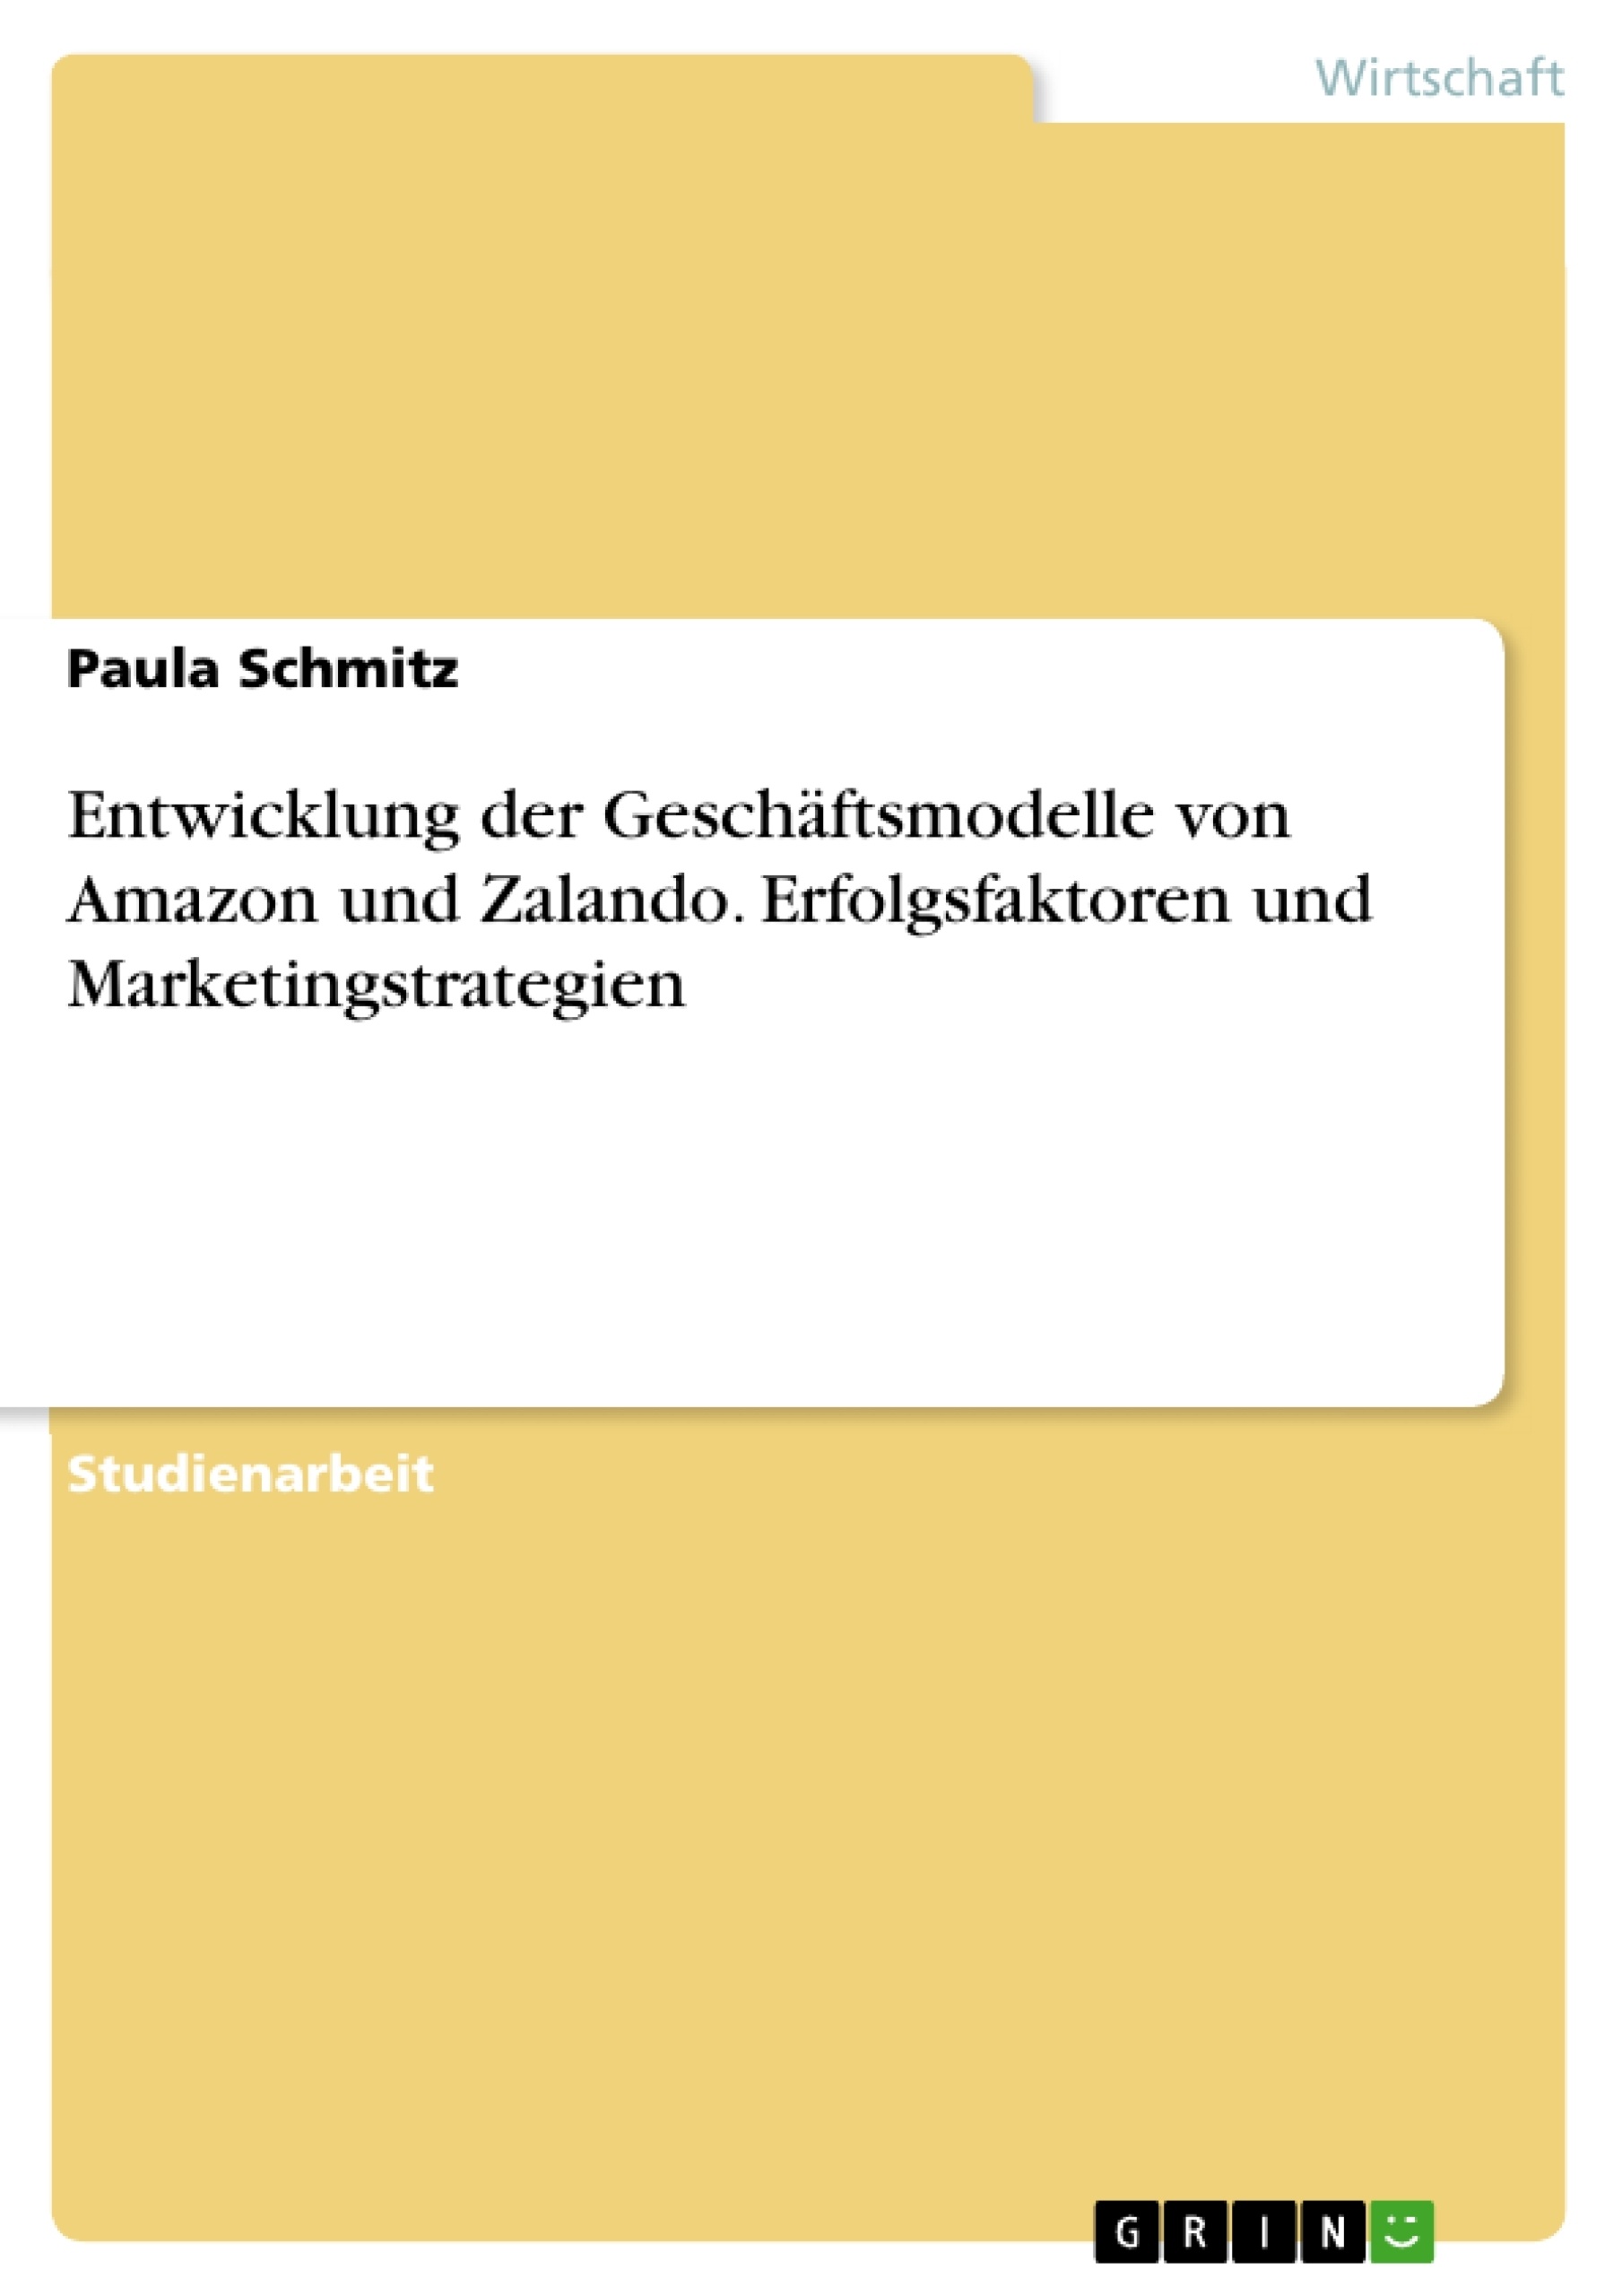 Título: Entwicklung der Geschäftsmodelle von Amazon und Zalando. Erfolgsfaktoren und Marketingstrategien